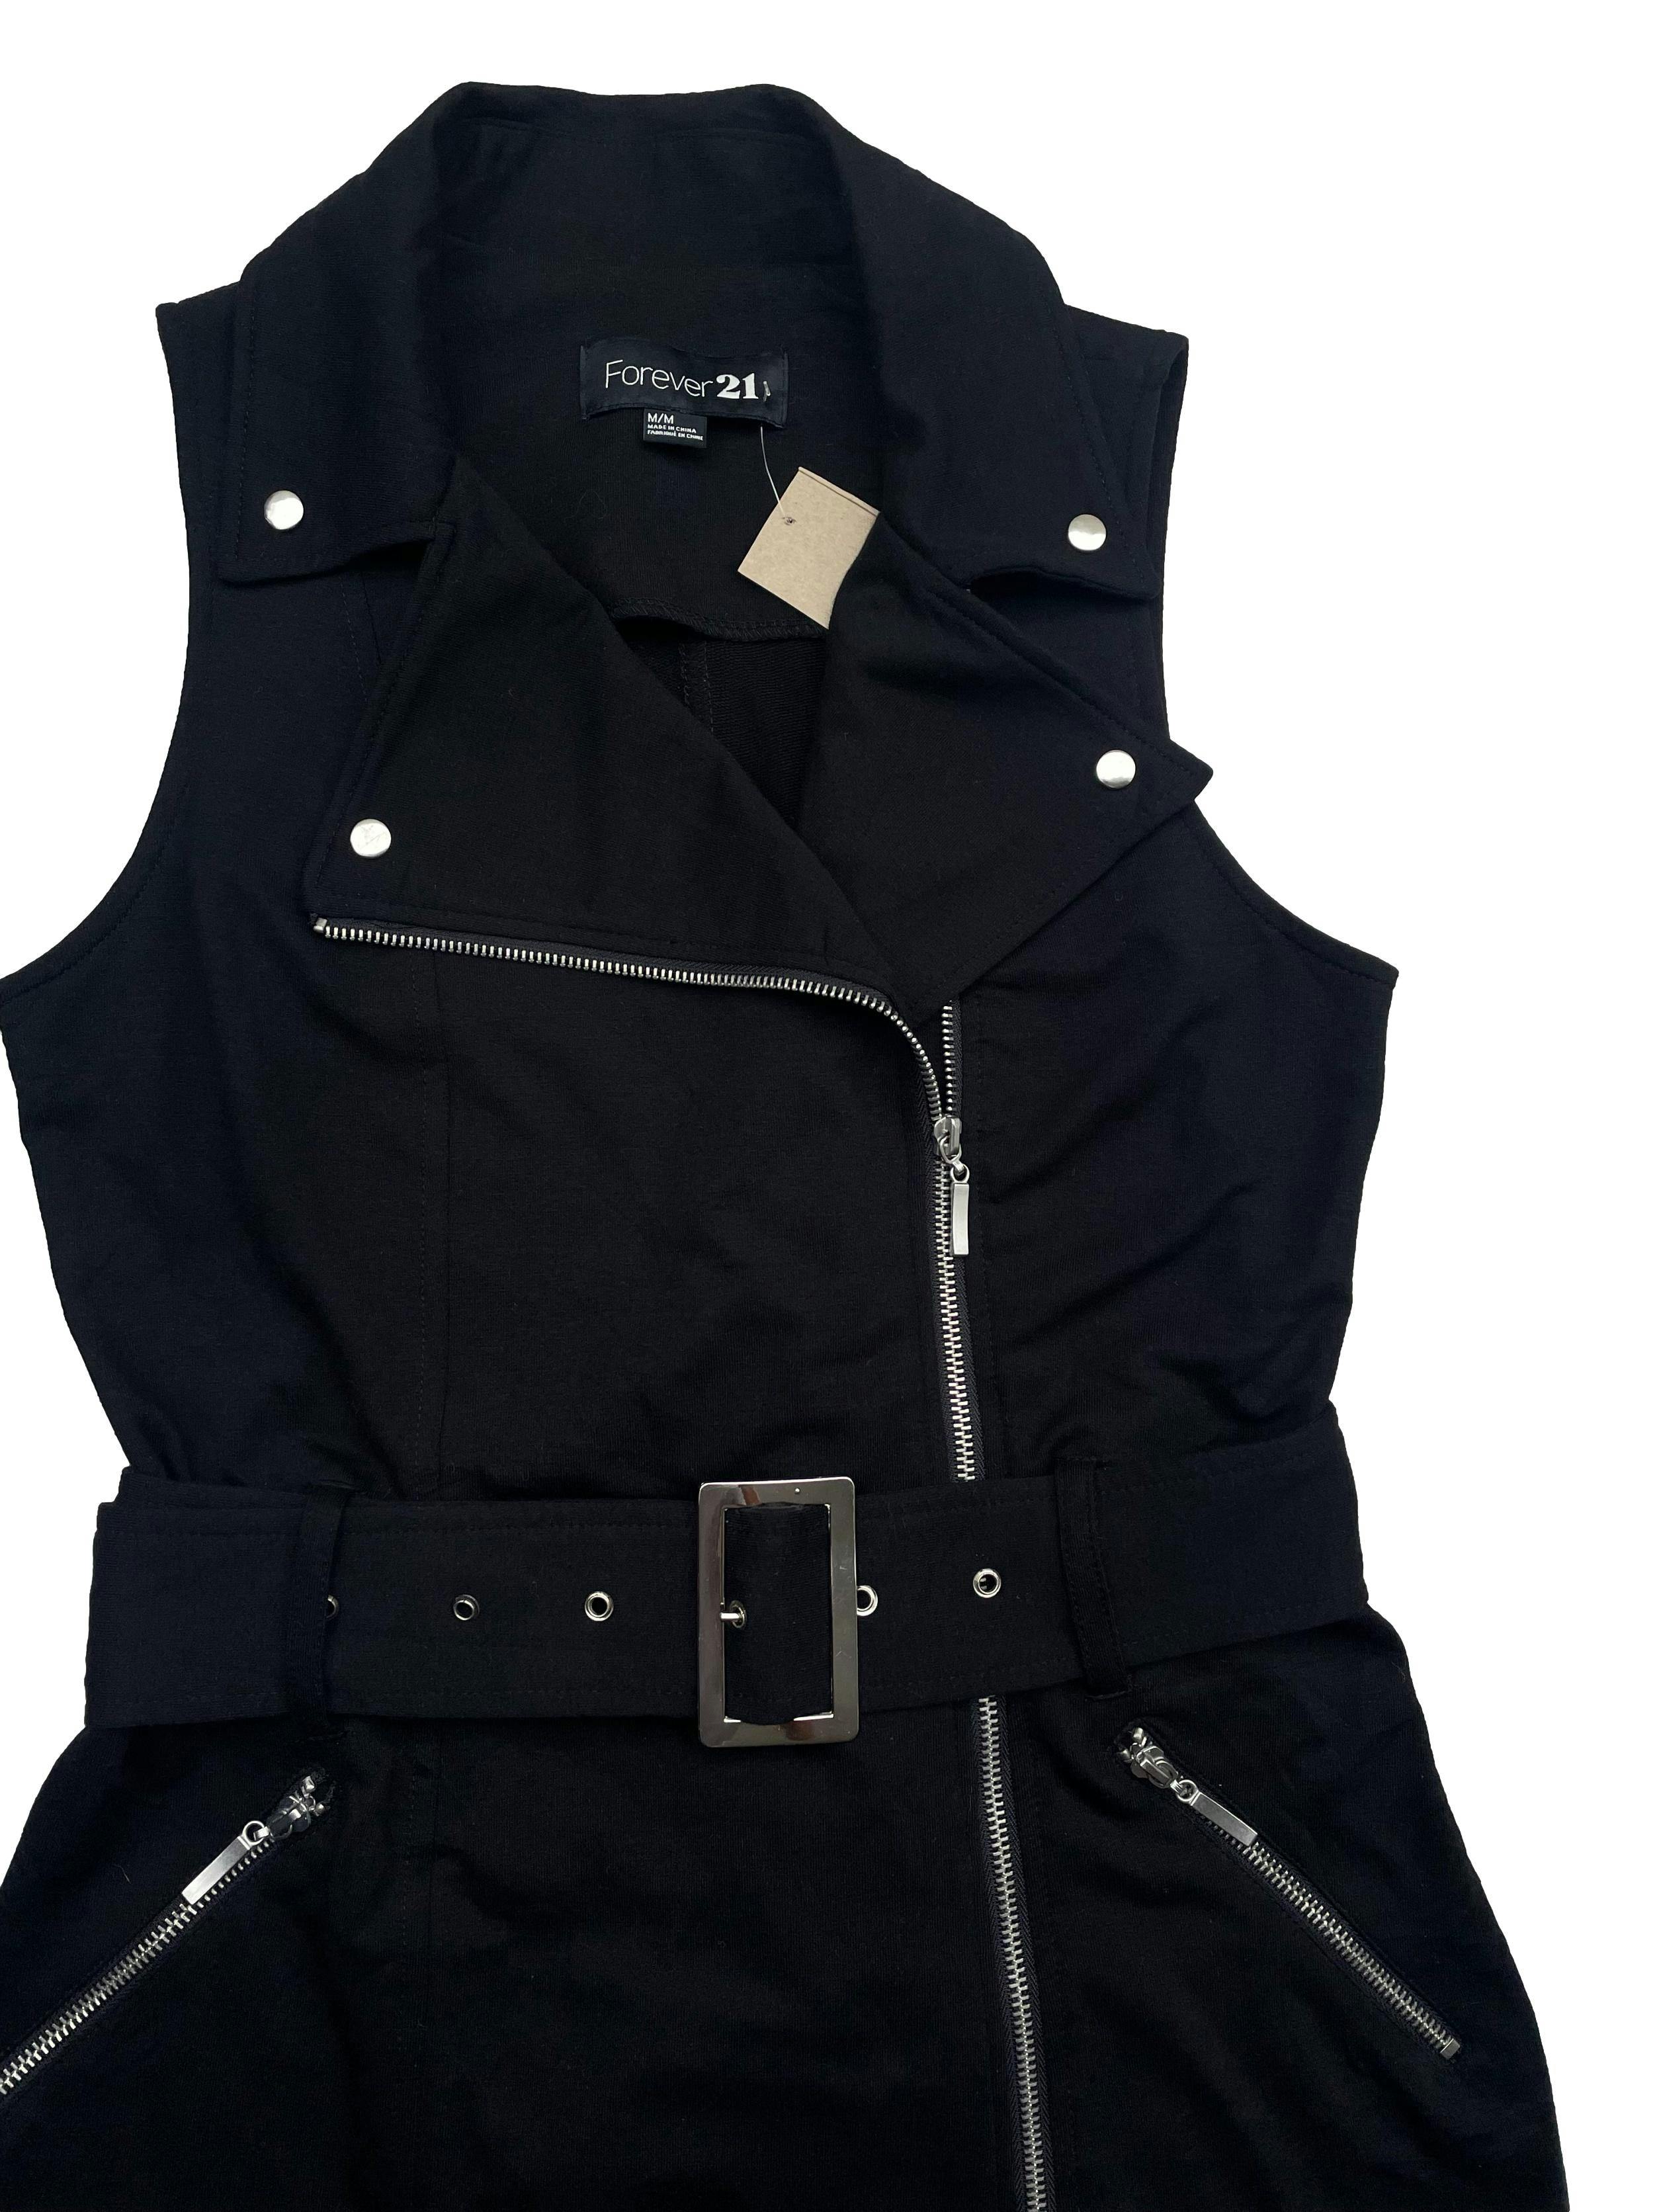 Chaleco Forever21de jersey negro, estilo biker, cinturón y cierre delanteros, con bolsillos laterales. Busto 95cm sin estirar, Largo 75cm.